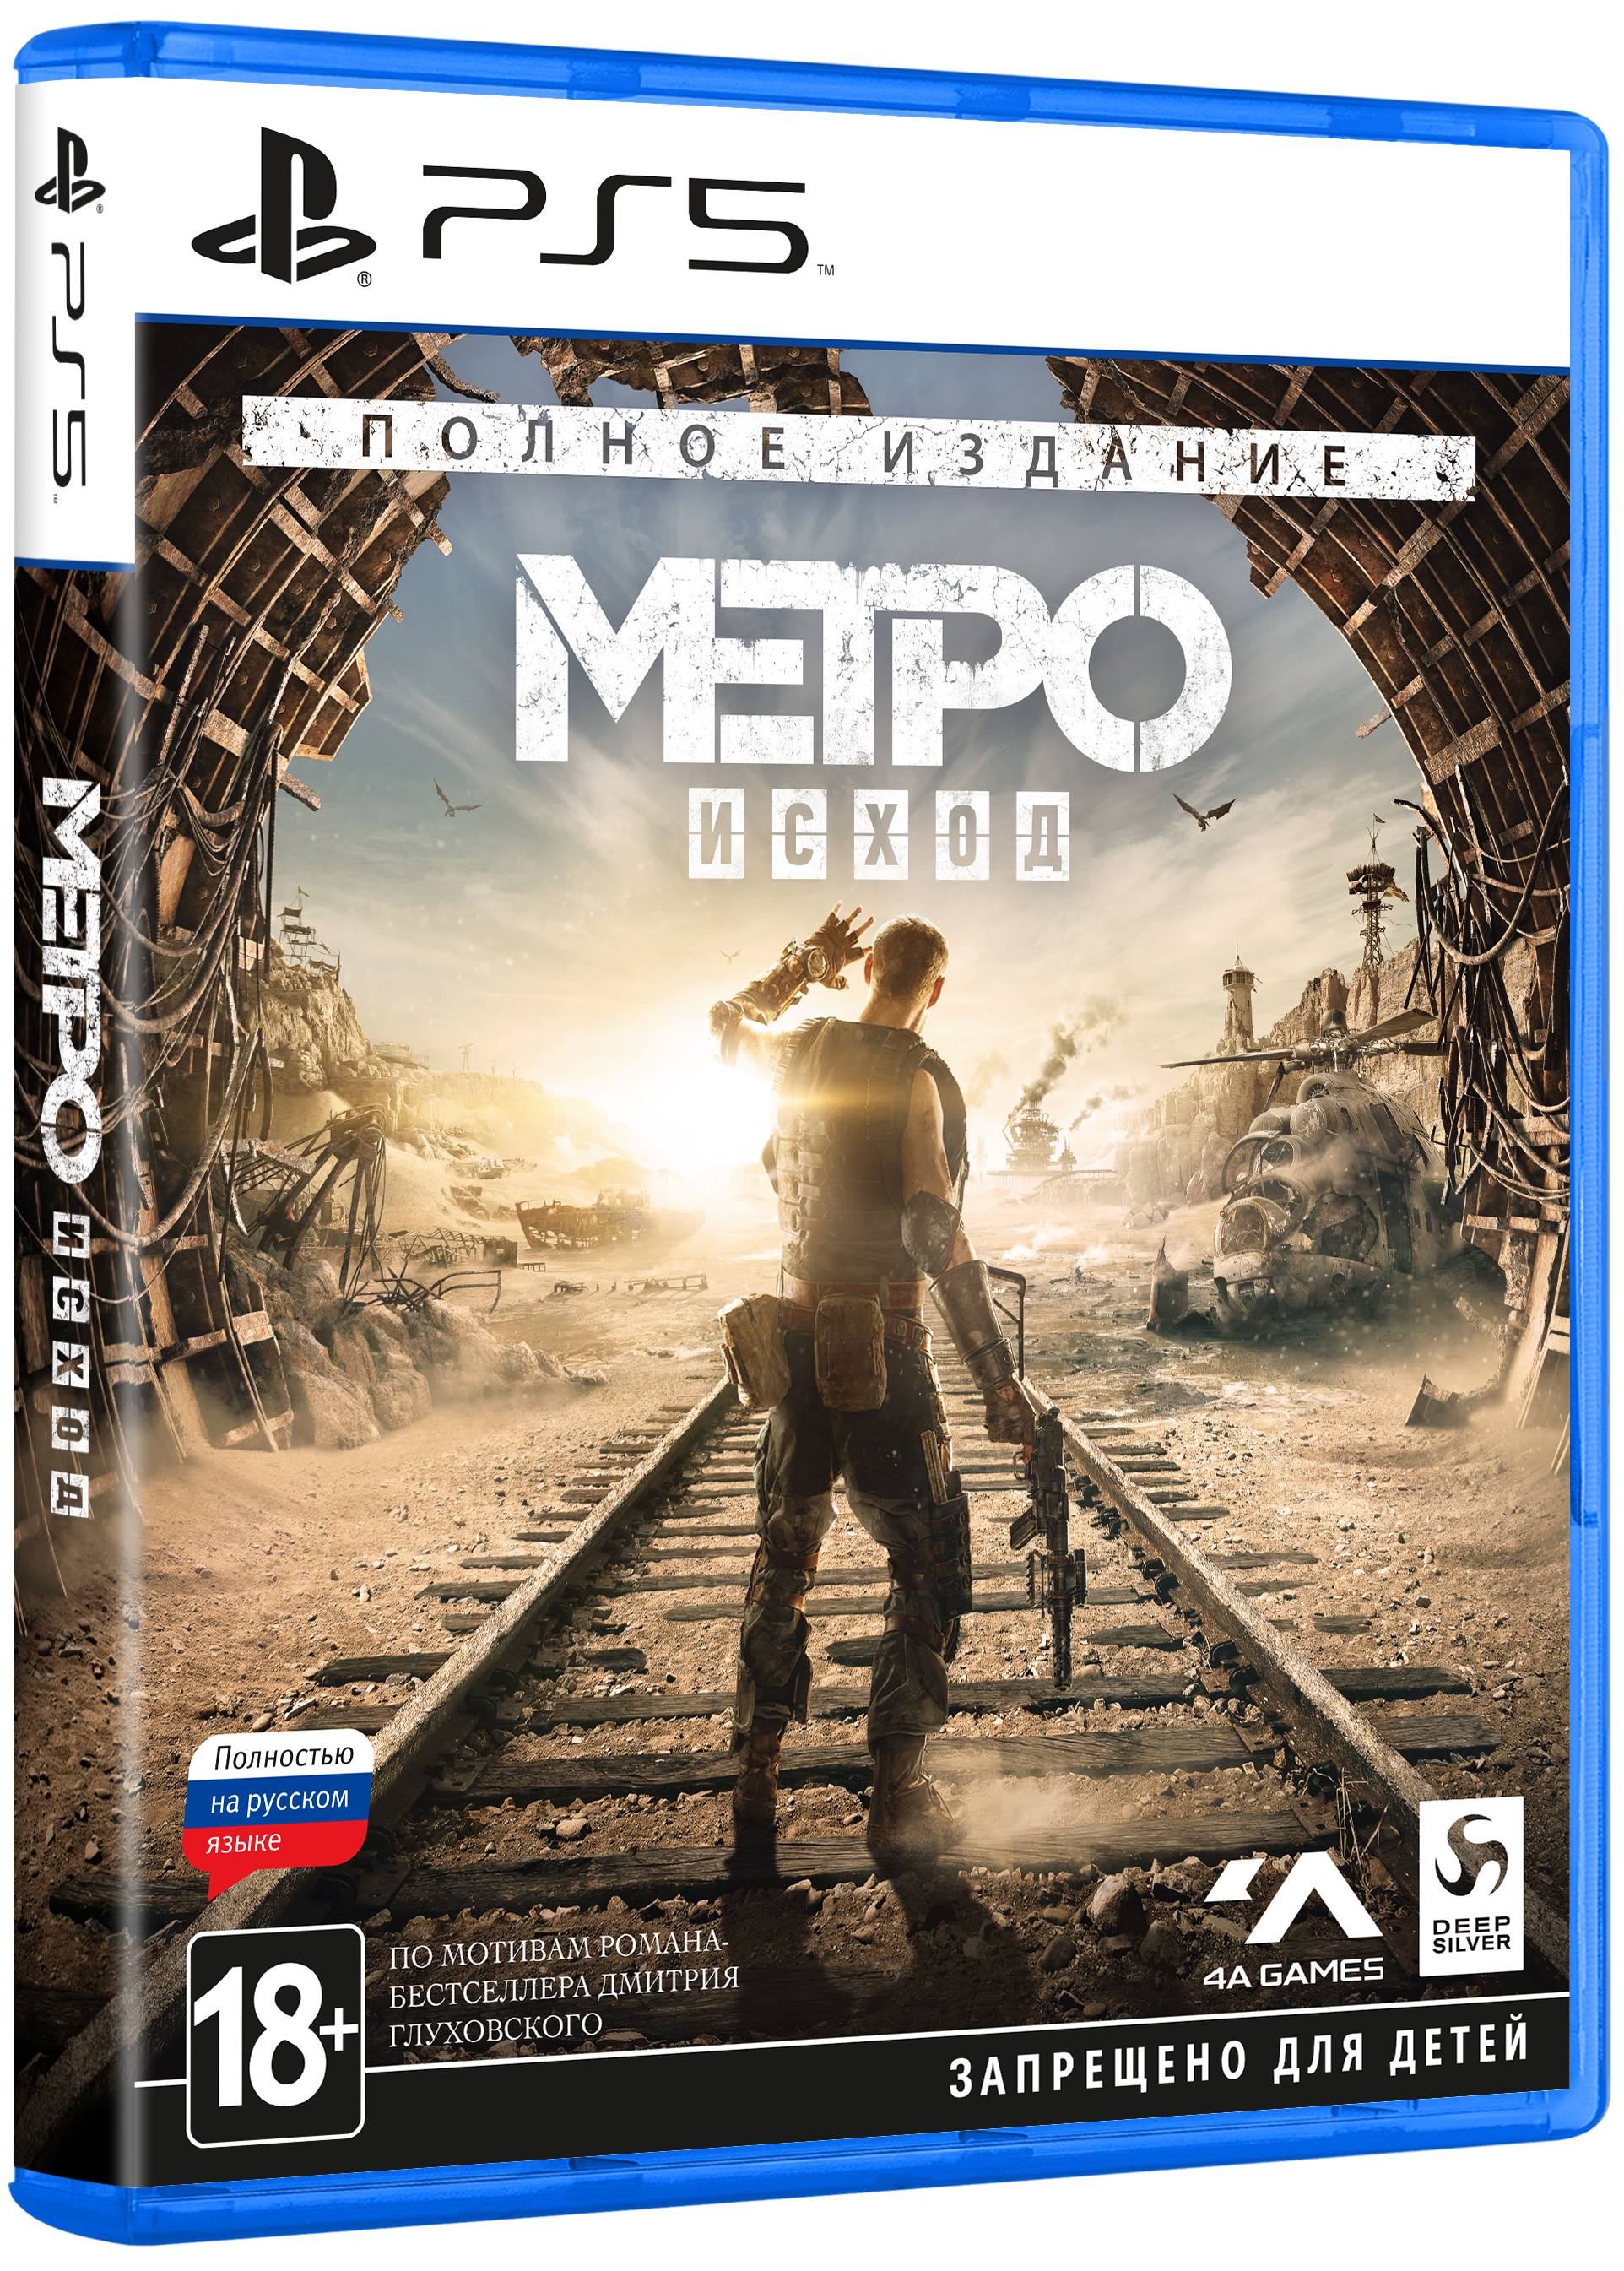 Метро исход издание. Метро исход на пс4. Метро исход диск Xbox one. Metro Exodus ps4. Metro Exodus Gold Edition ps4.